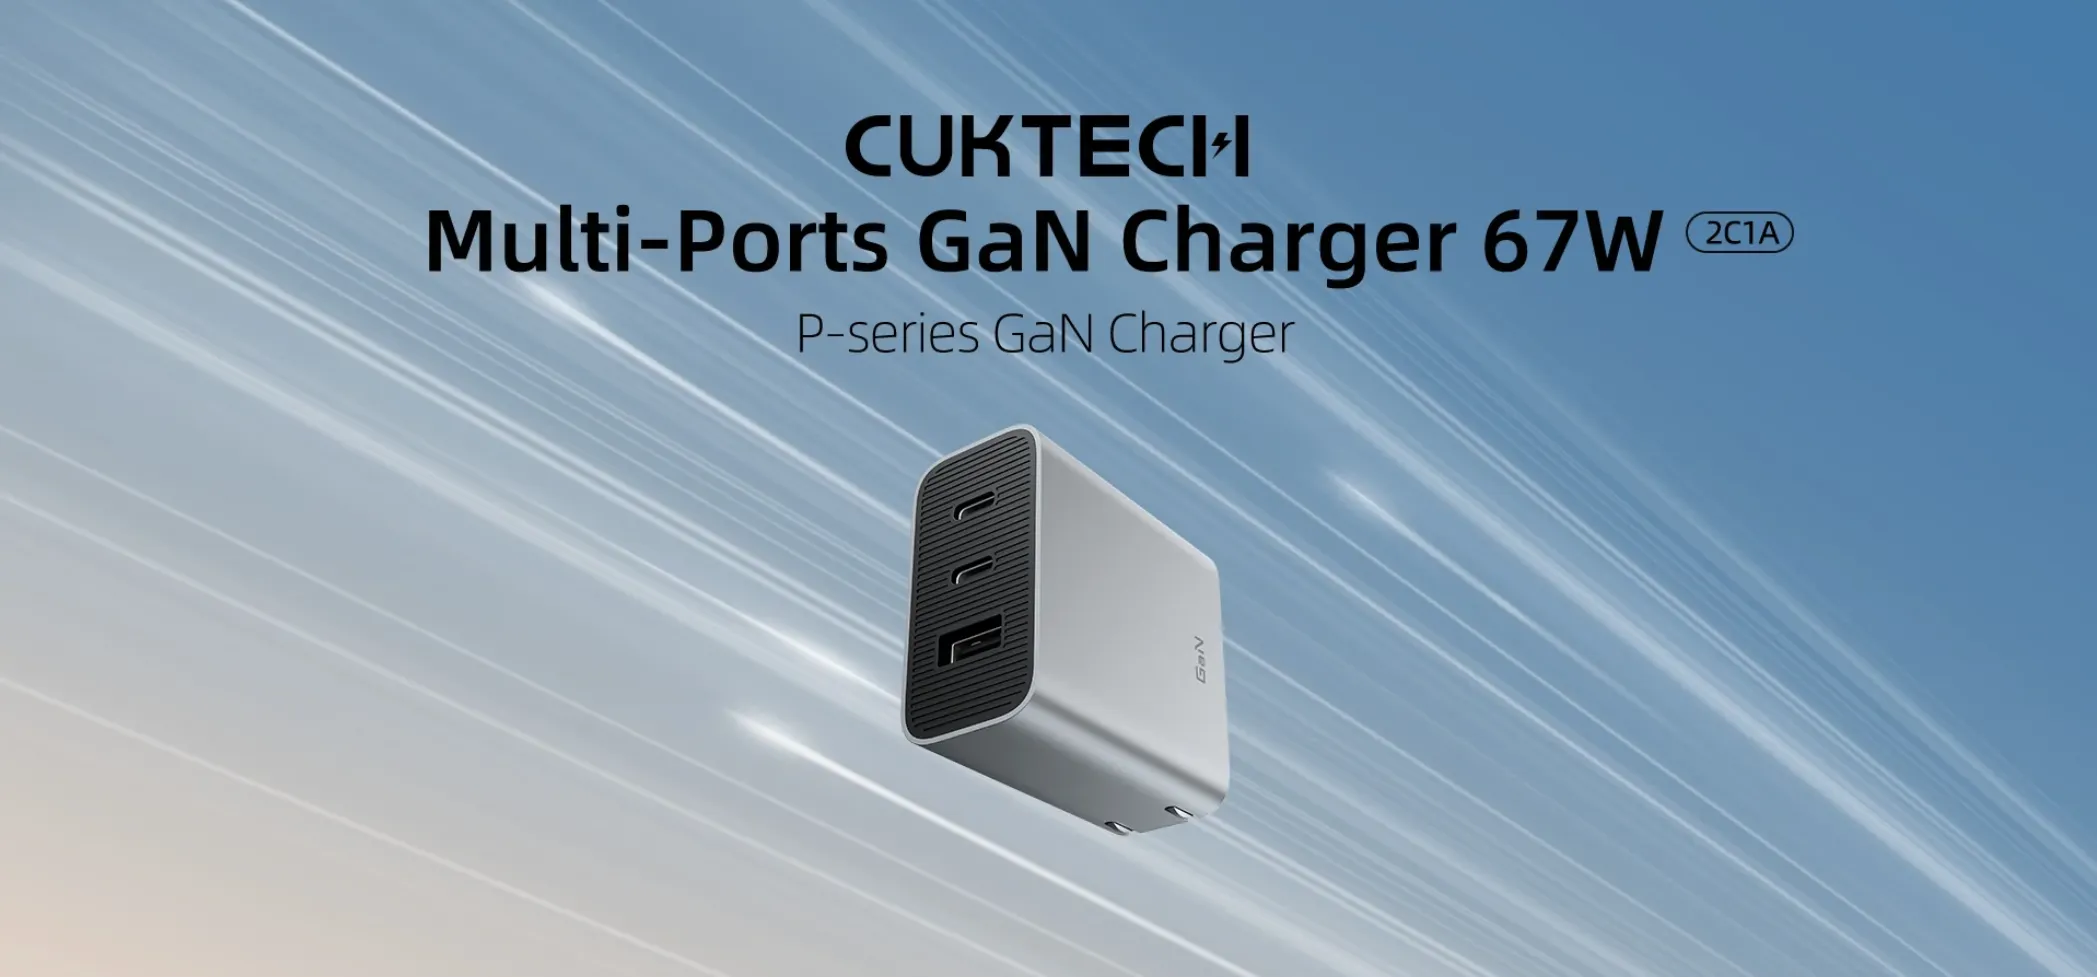 Tính Năng Nổi Bật Cuktech Multi-ports GaN Charger 67W (2C1A)